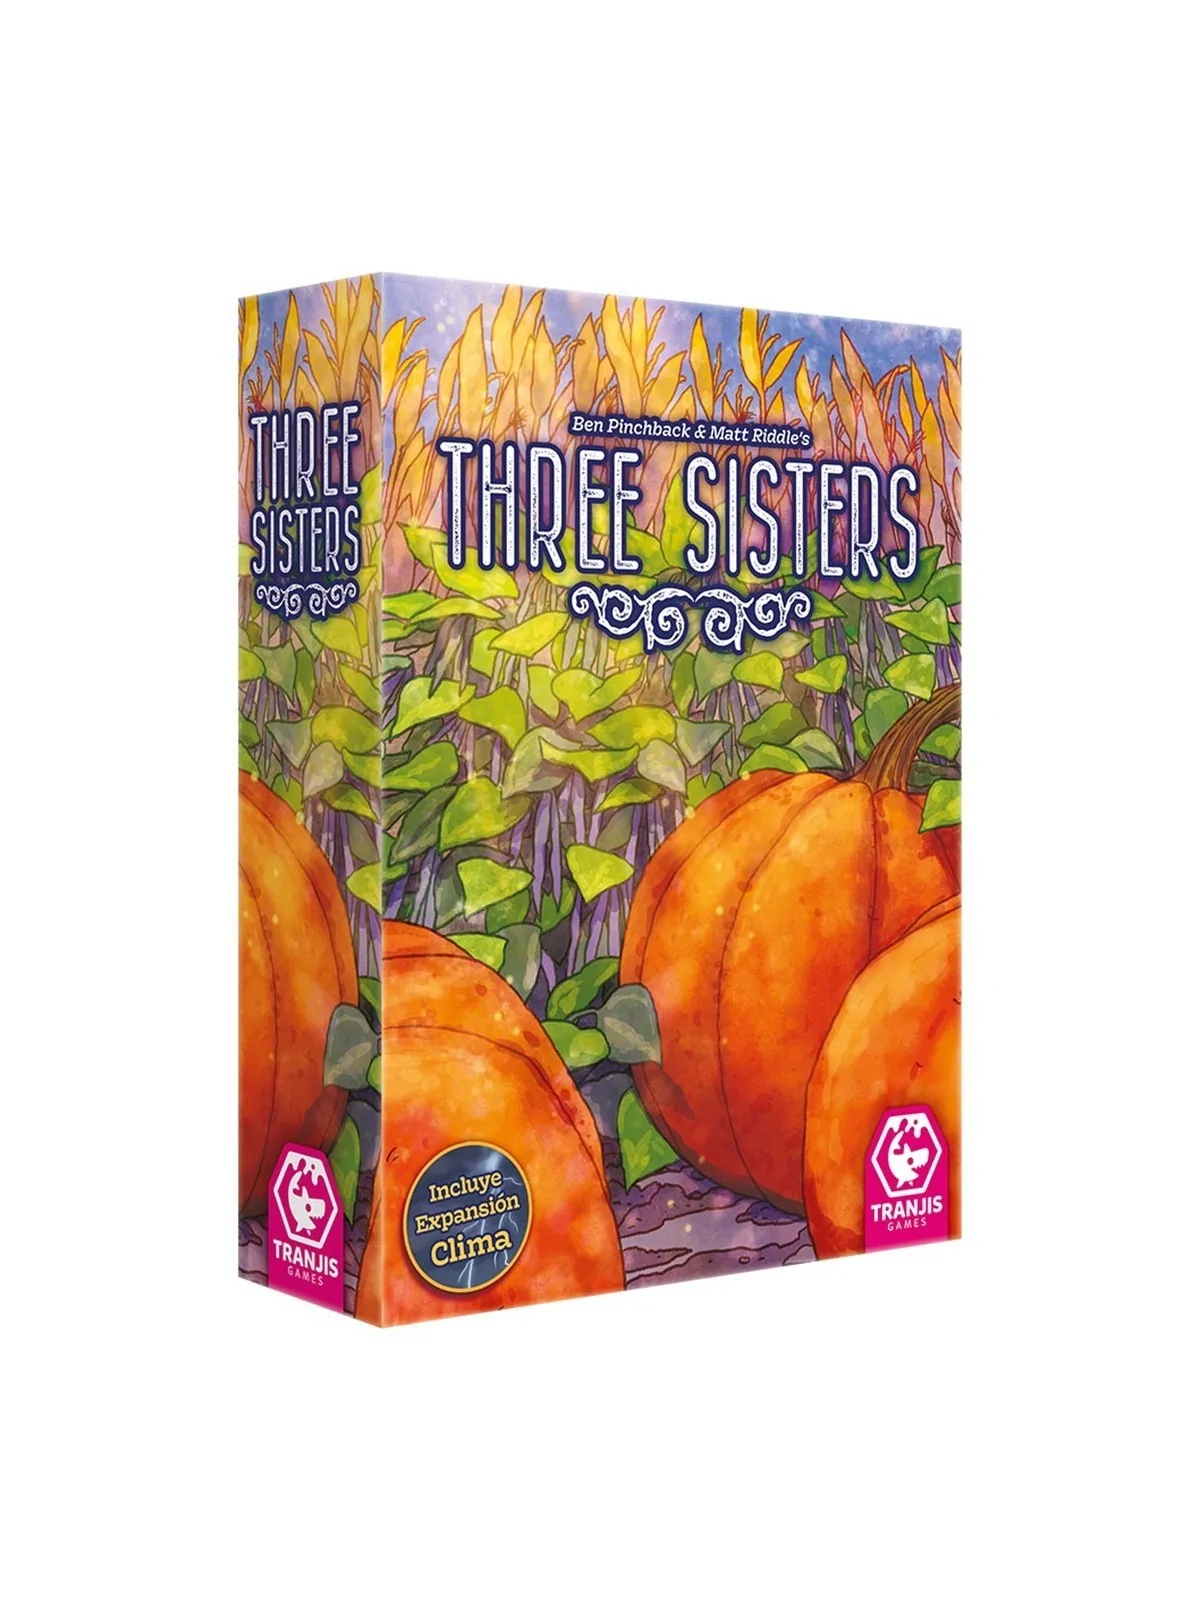 Comprar Three Sisters barato al mejor precio 21,21 € de Tranjis games 